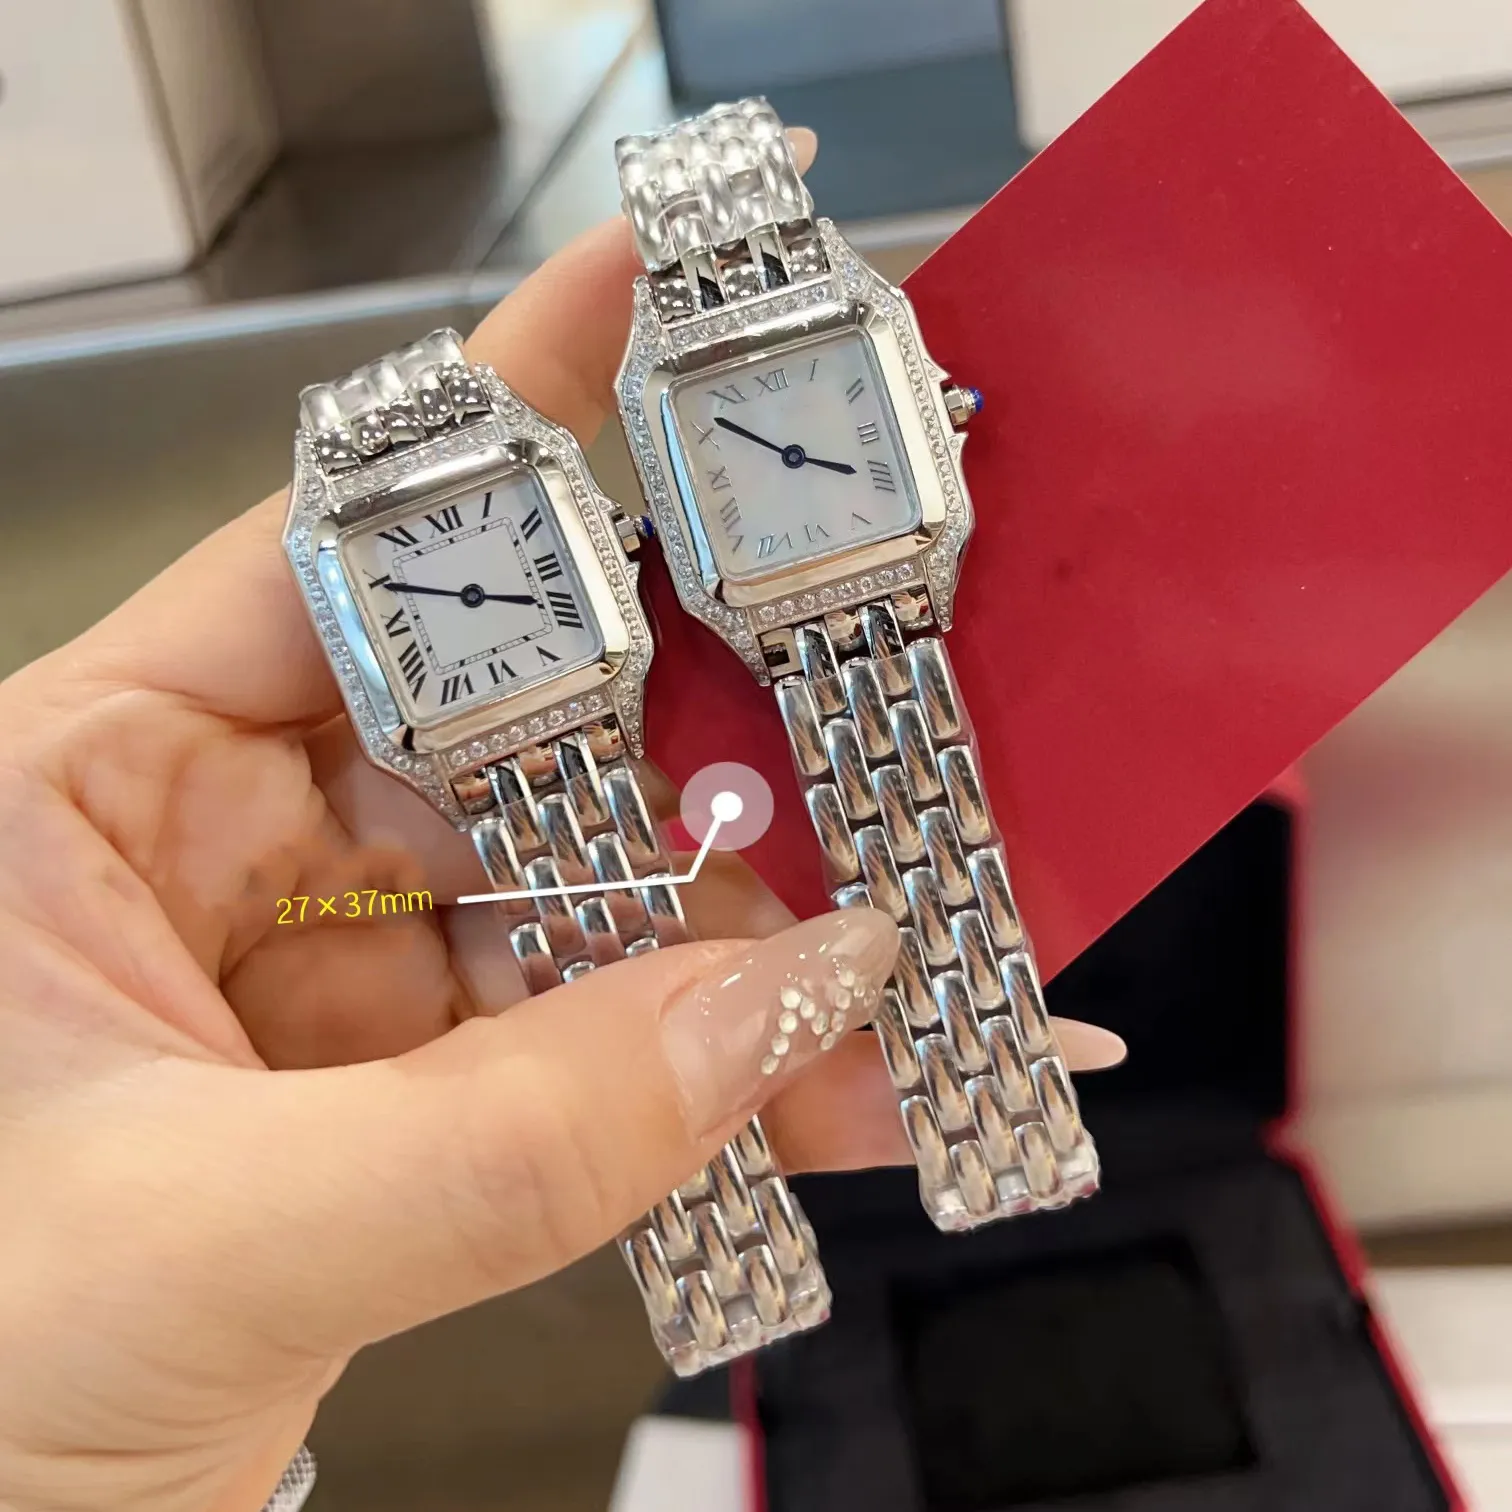 Reloj de lujo Reloj para mujer Reloj cuadrado Reloj de diseño con diamantes Movimiento de cuarzo de alta calidad Tamaño 27x37 Pulsera de acero inoxidable Relojes de moda antidecoloración para mujer